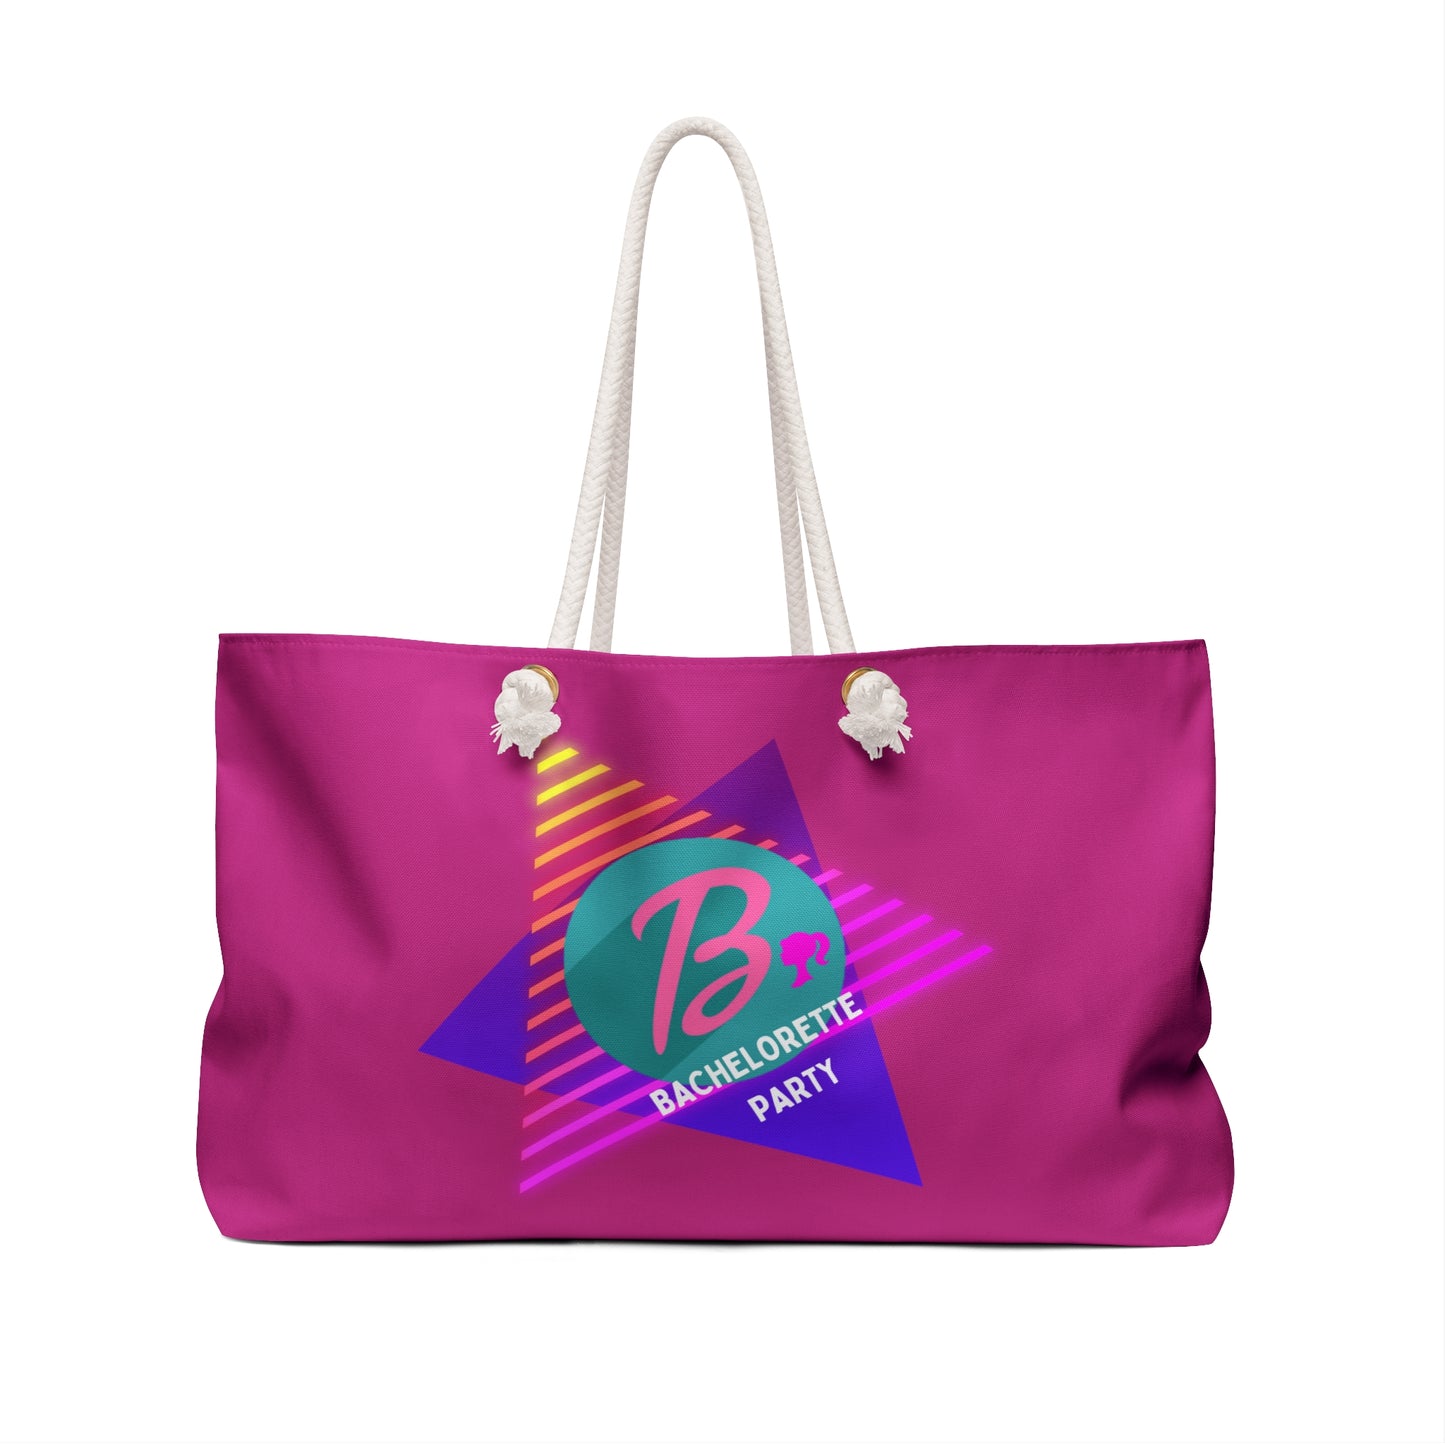 Barbie Bachelorette Party Weekender Bag, Barbie Bachelorette Party, Barbie Weekend Tote